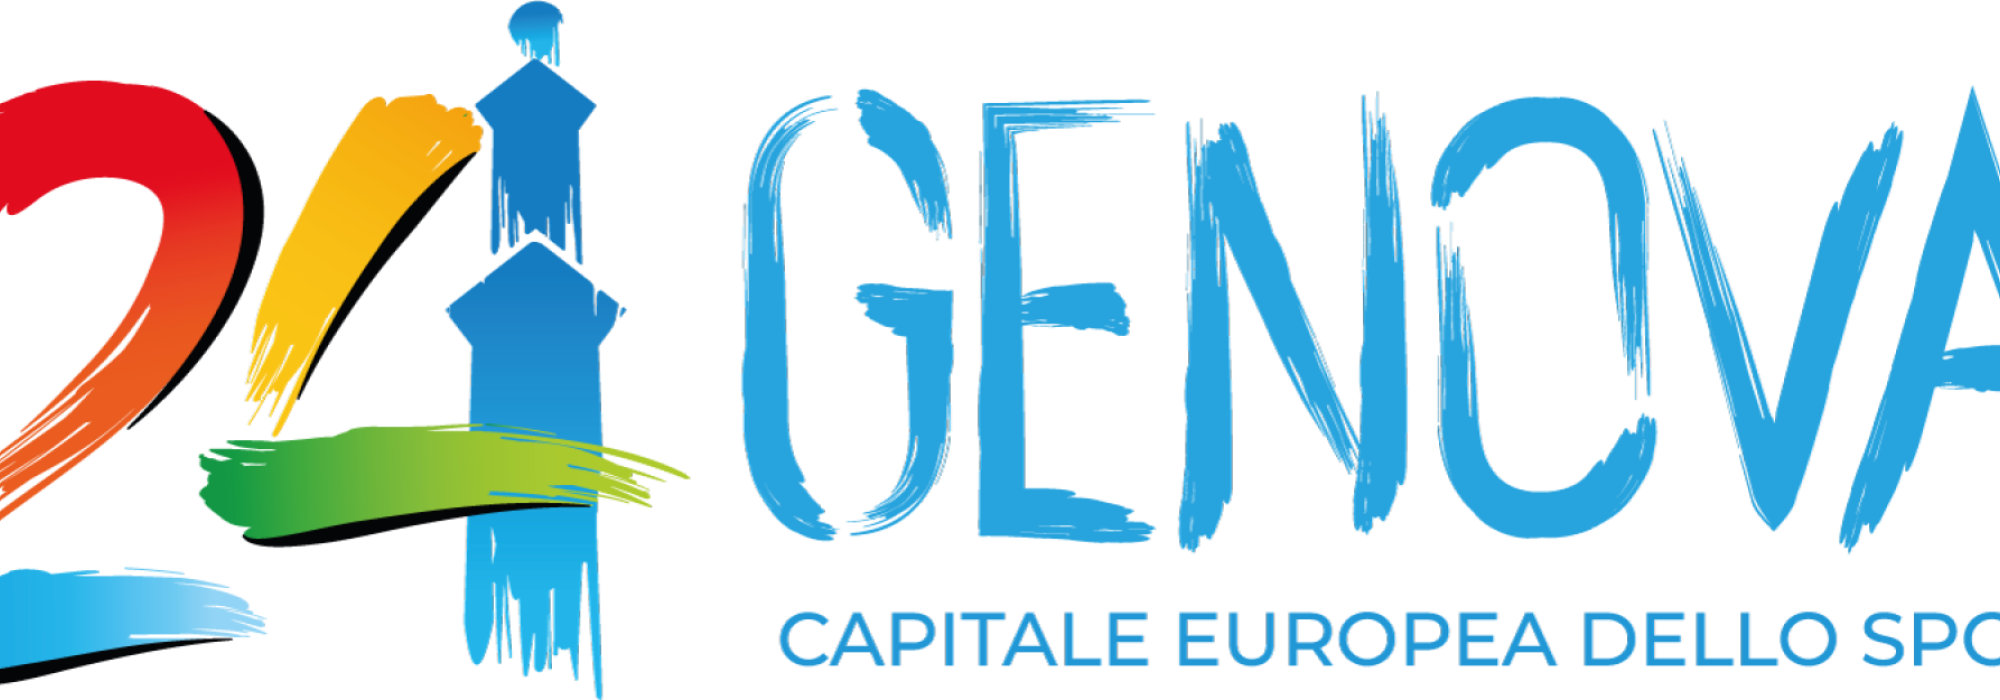 Logo Genova 2024